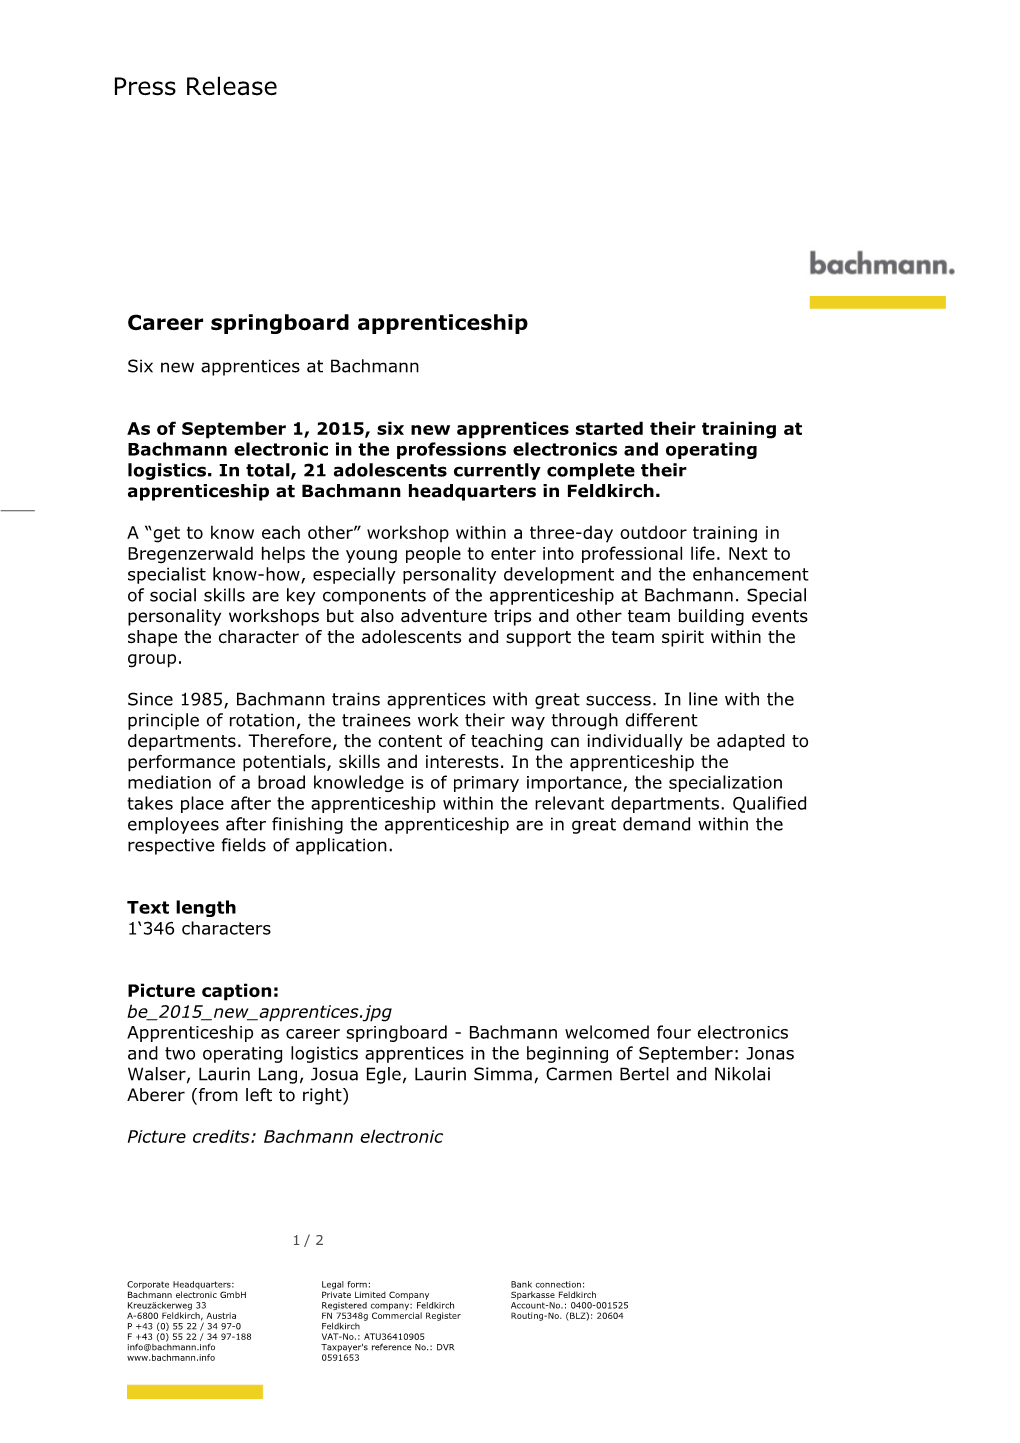 Career Springboard Apprenticeship